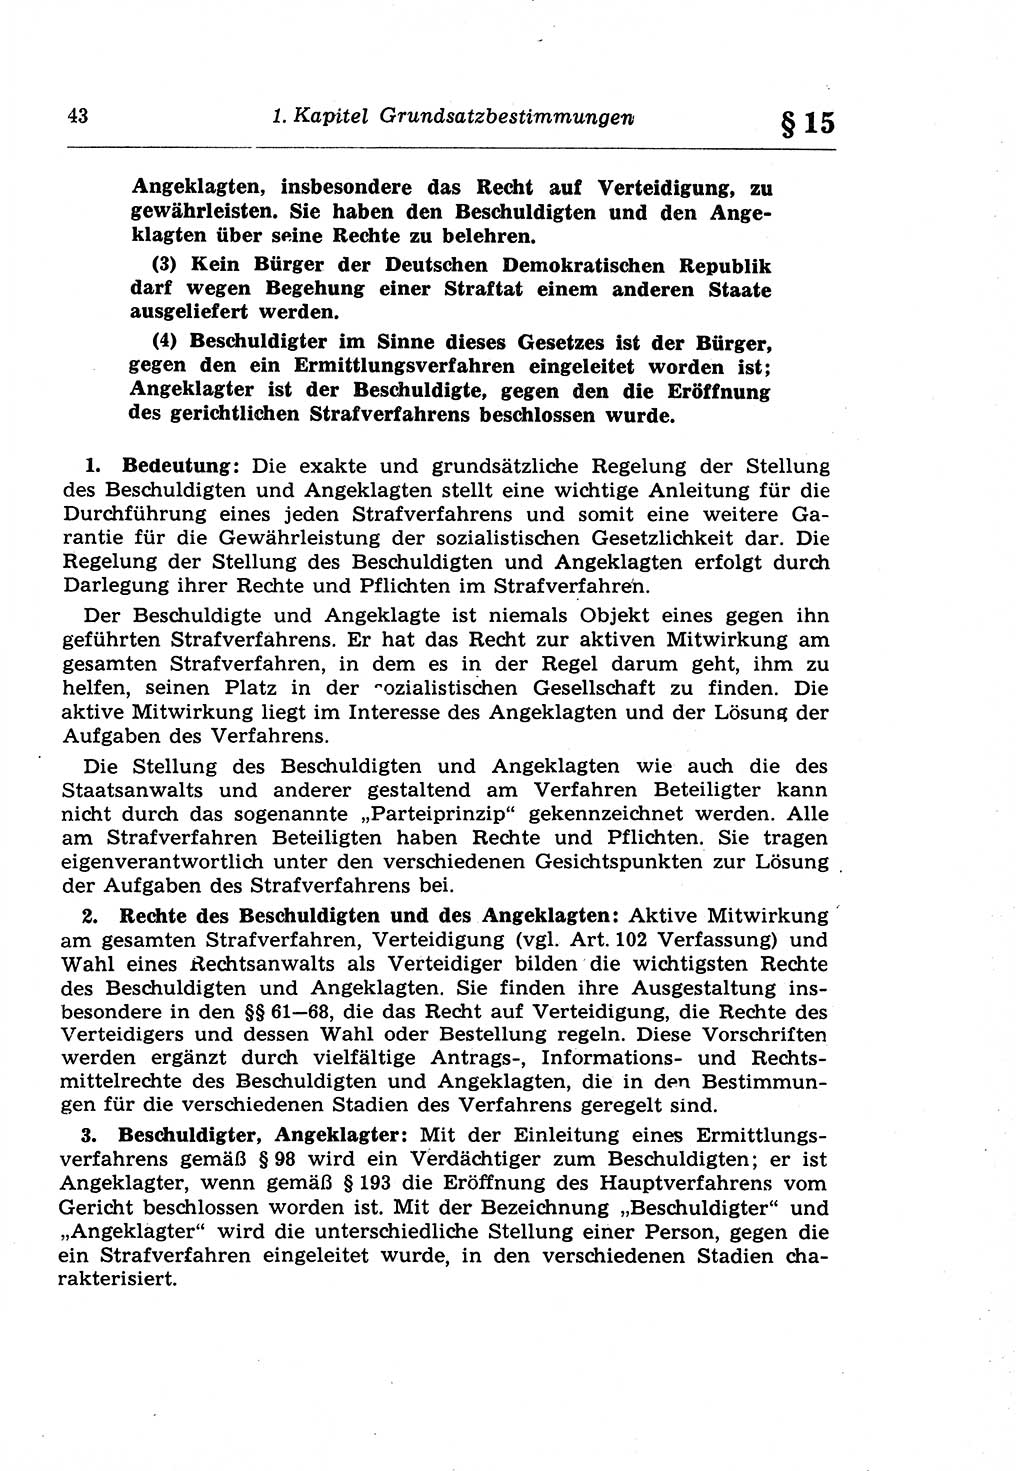 Strafprozeßrecht der DDR (Deutsche Demokratische Republik), Lehrkommentar zur Strafprozeßordnung (StPO) 1968, Seite 43 (Strafprozeßr. DDR Lehrkomm. StPO 19688, S. 43)